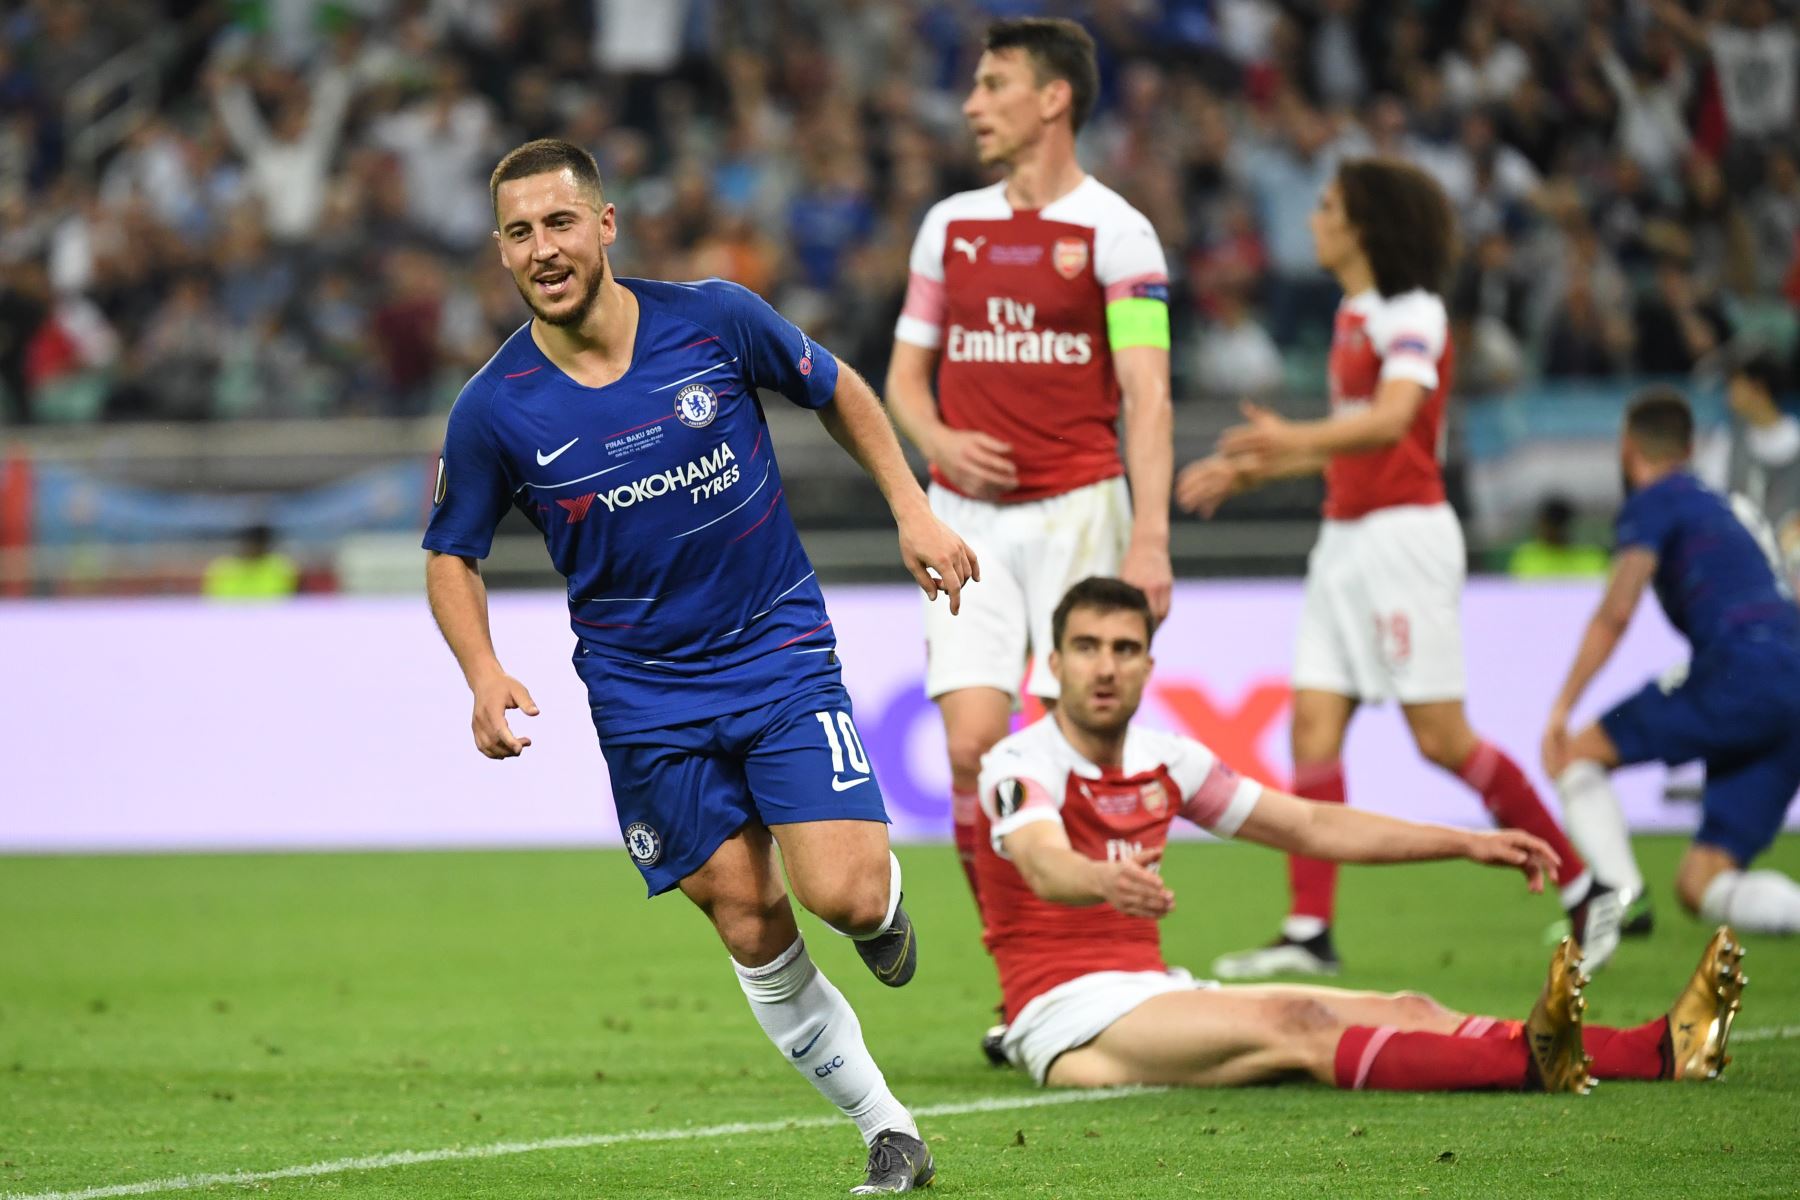 El mediocampista belga del Chelsea Eden Hazard (L) celebra después de marcar un gol durante el último partido de fútbol de la UEFA Europa League entre el Chelsea FC y el Arsenal FC en el Estadio Olímpico de Bakú en Azerbaiyán.
Foto:AFP